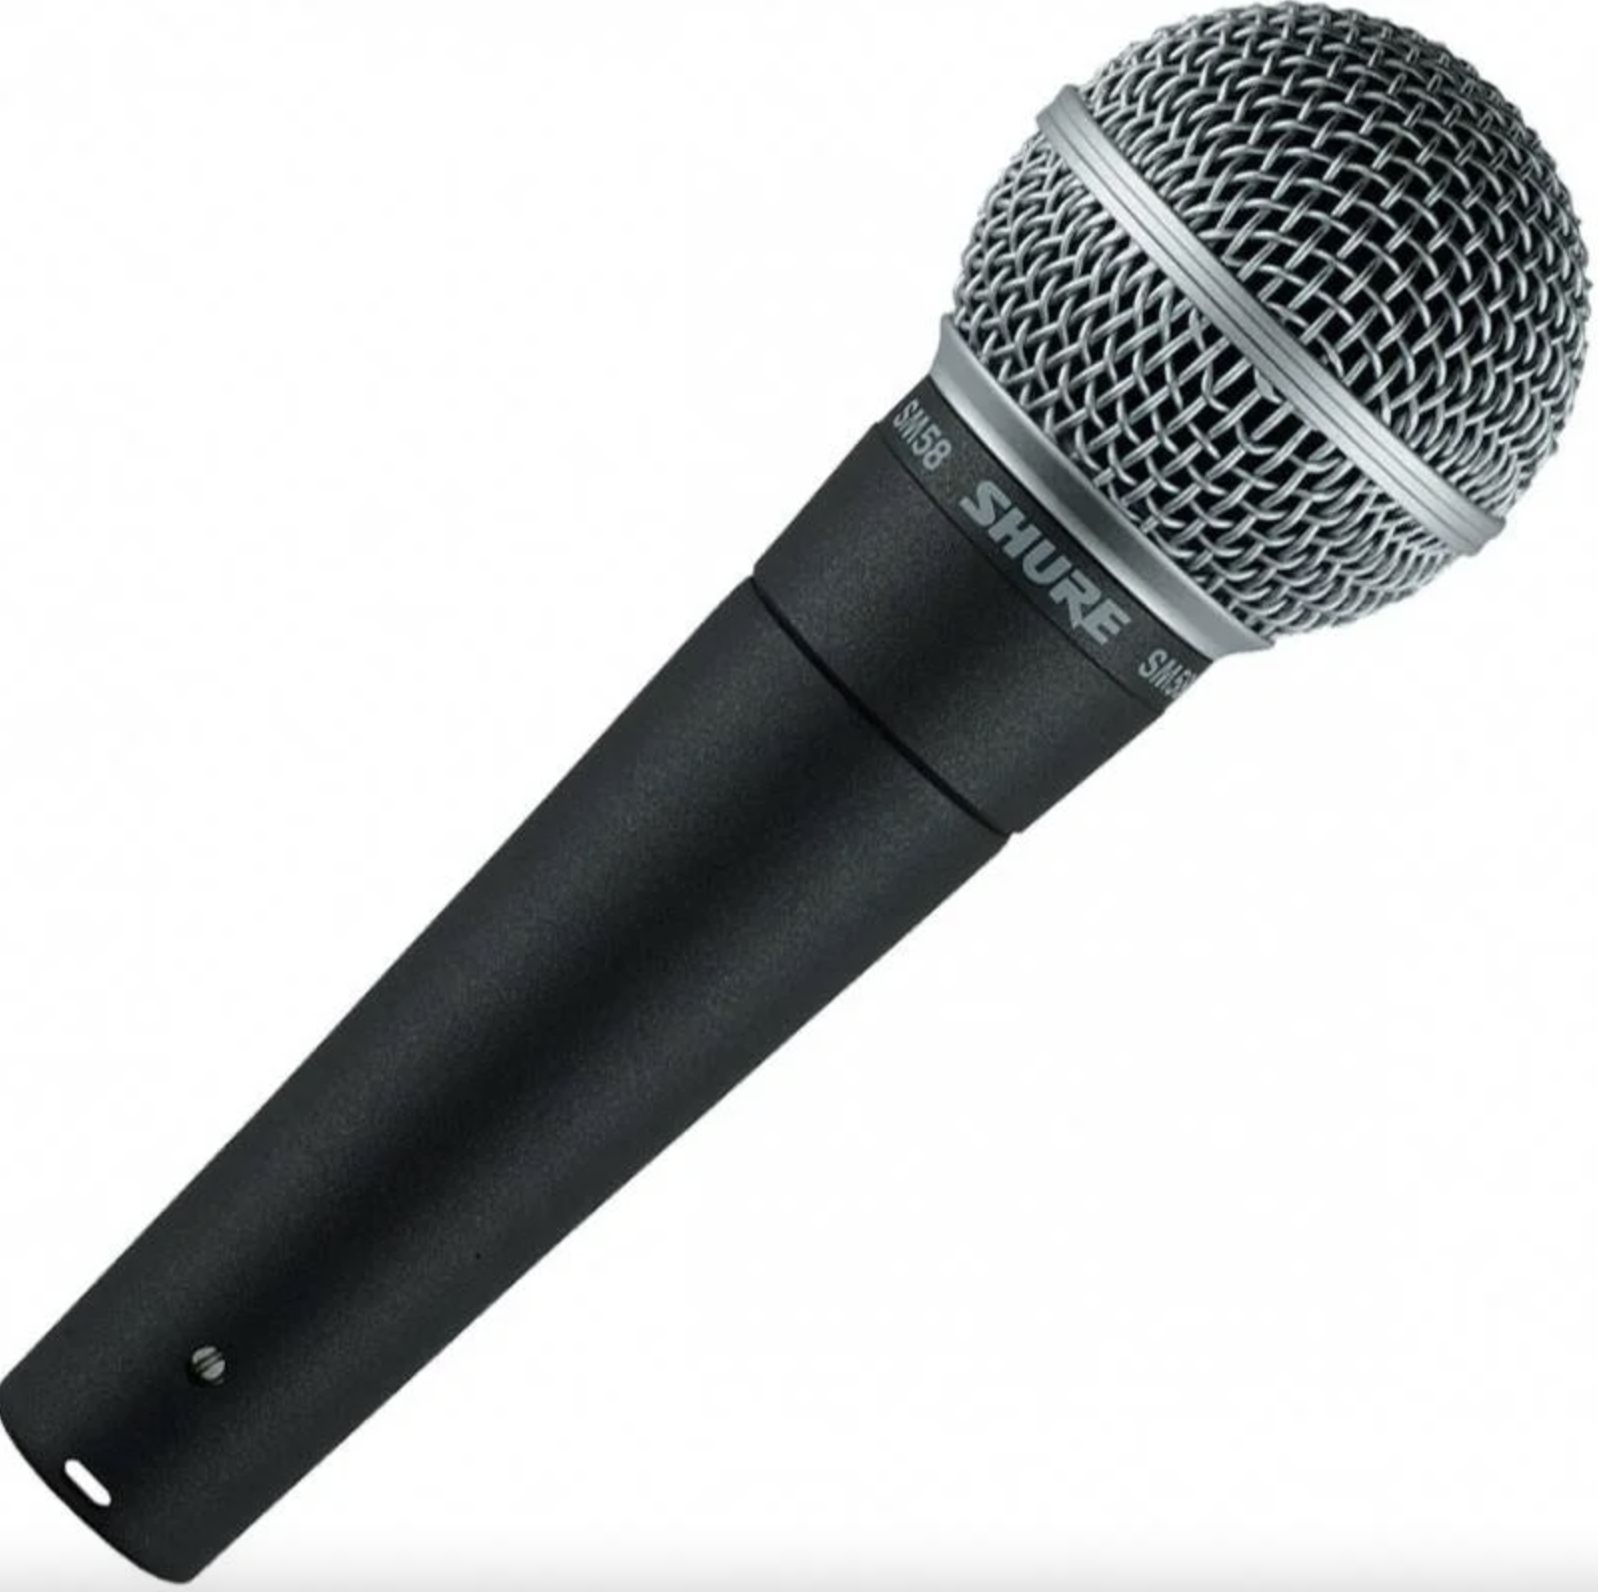 Купить вокальный. Микрофон Shure sm58. Shure микрофон Shure sm58-LCE. Вокальный динамический микрофон sm58 Shure. Микрофон Behringer xm8500.